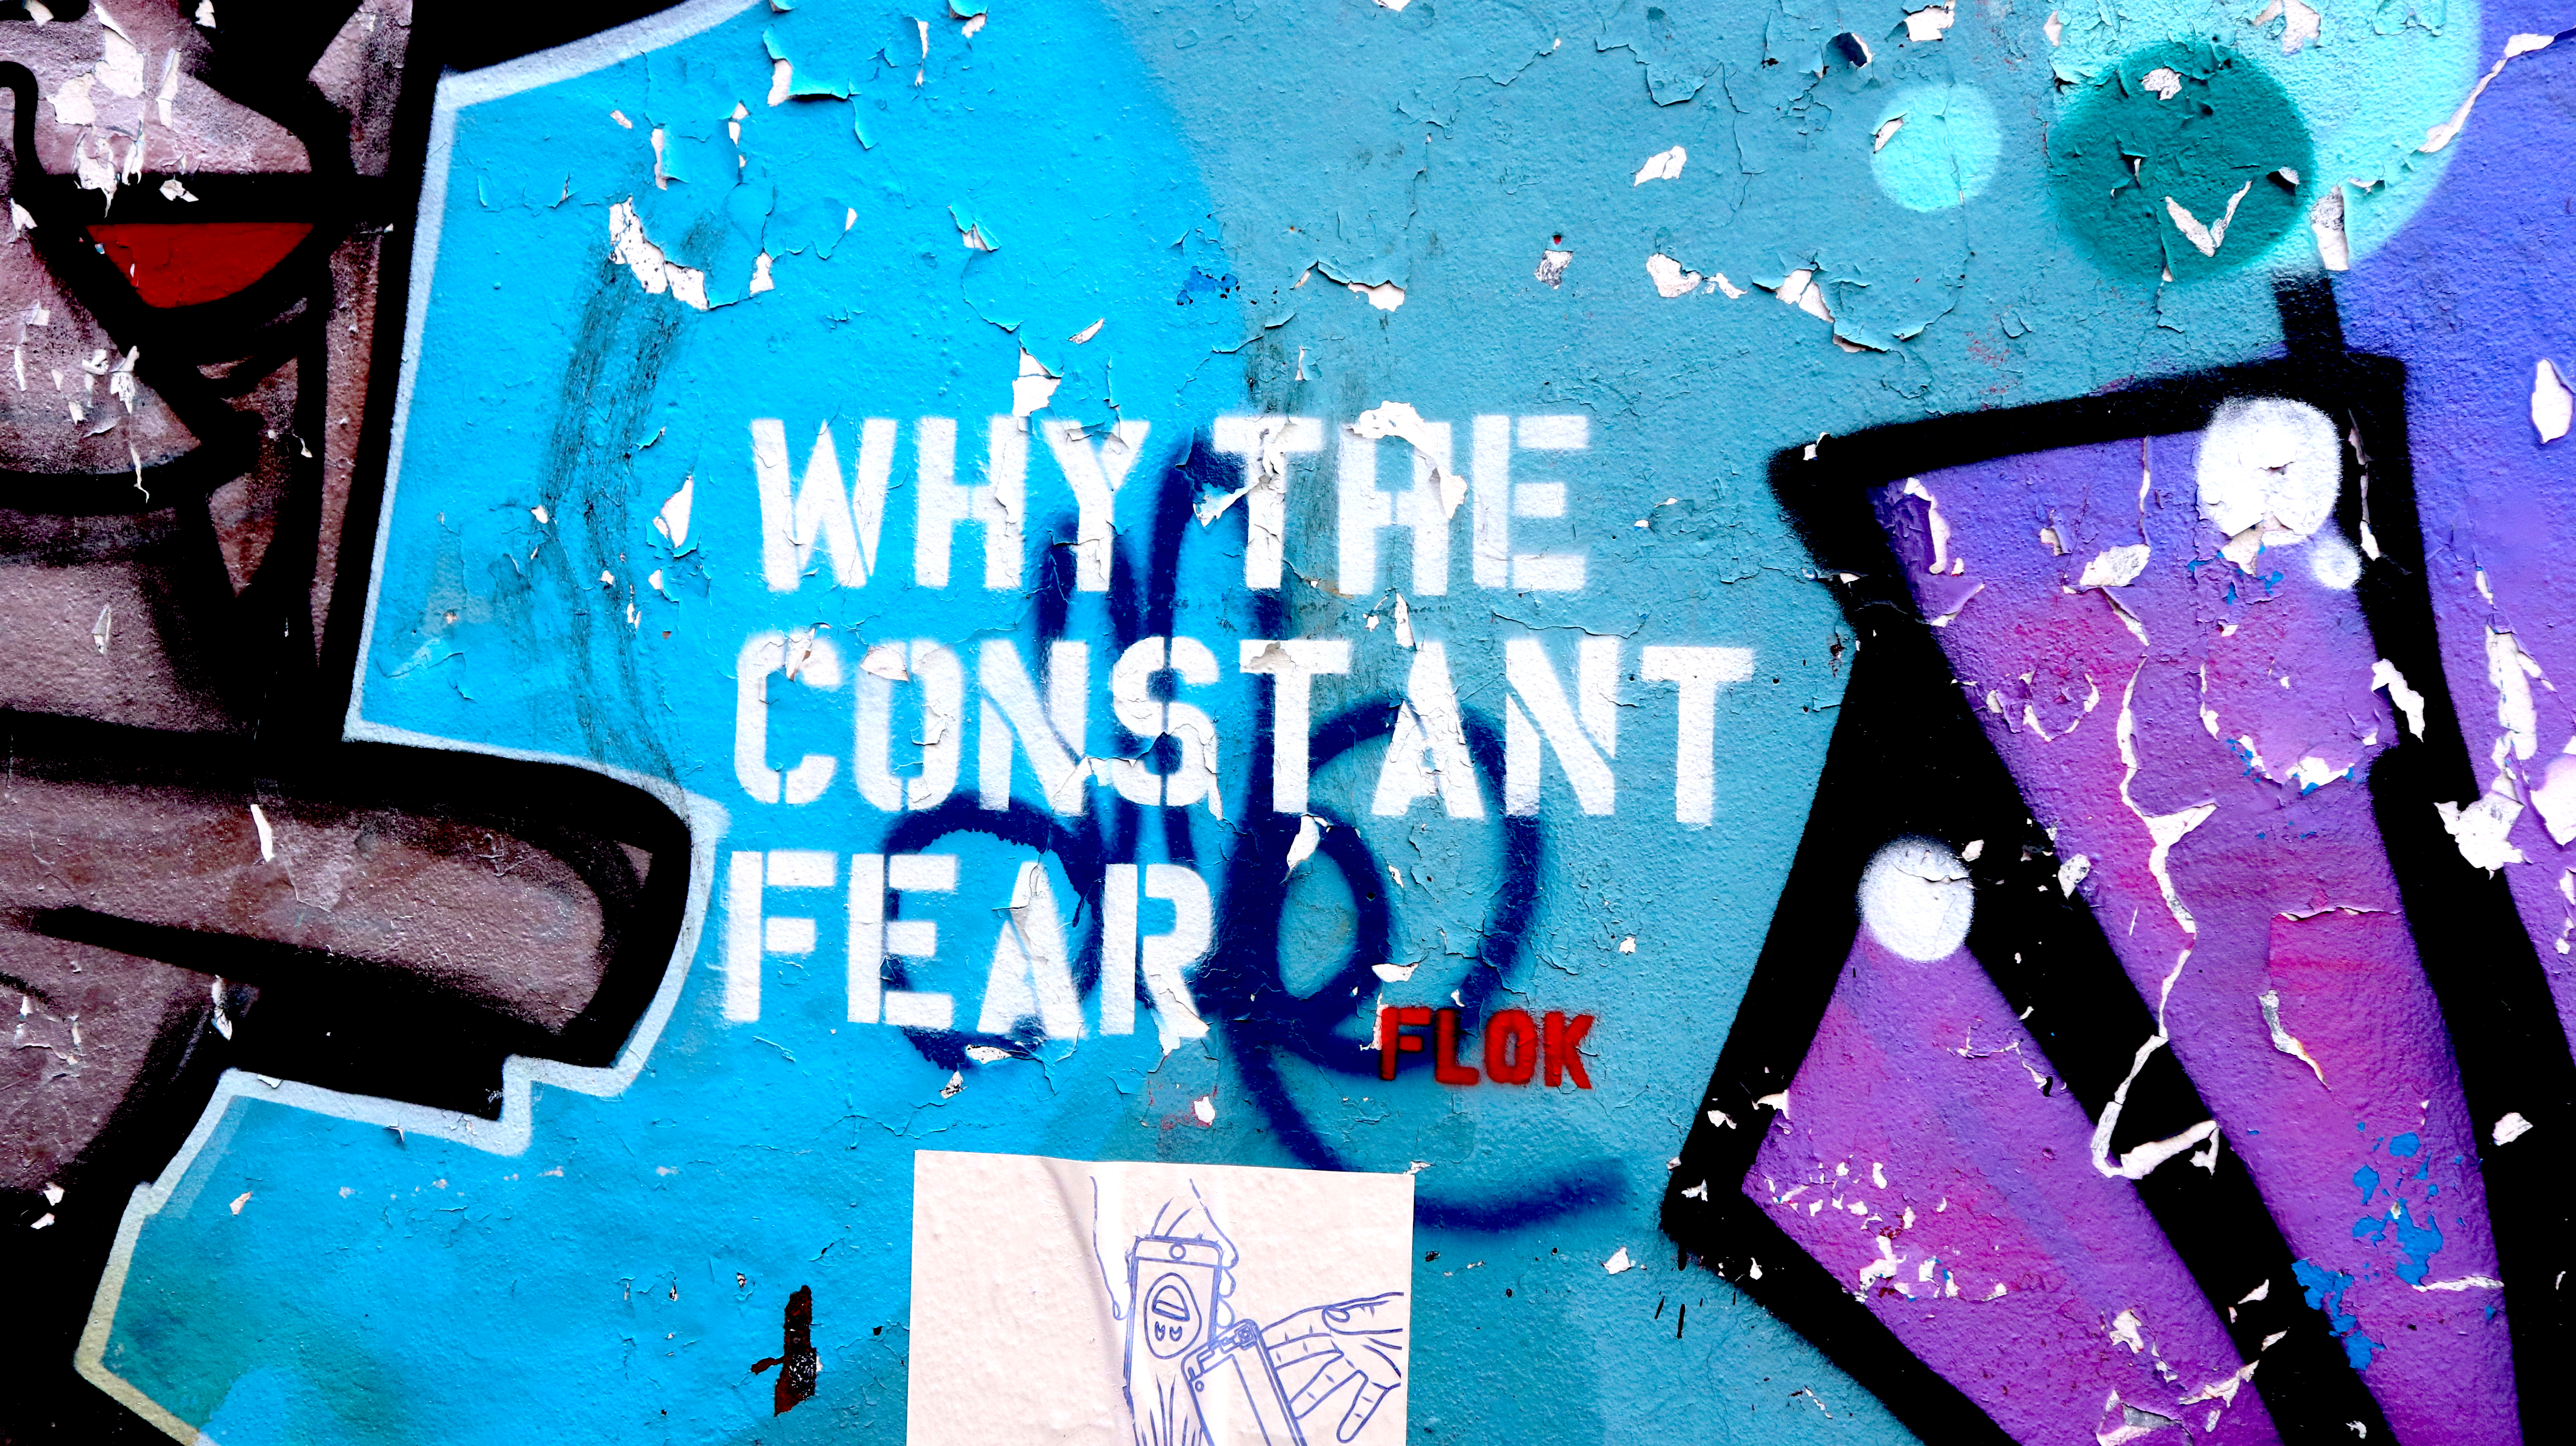 Kuvituskuva graffitista, jossa lukee kysymys "Why the constant fear"?